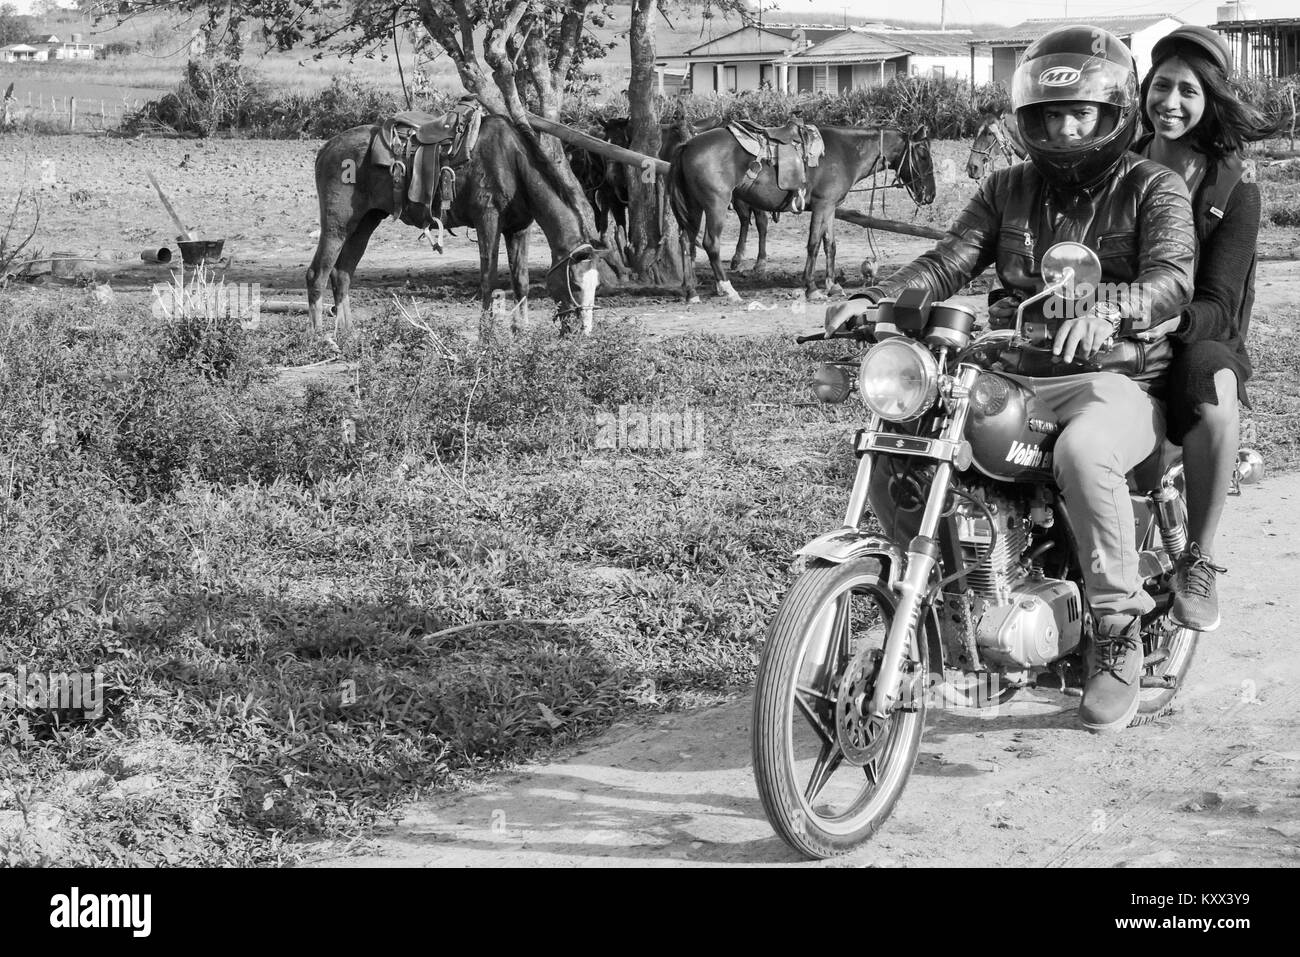 Young Cubans riding a motorcycle, Pinar Del Rio, Cuba Stock Photo